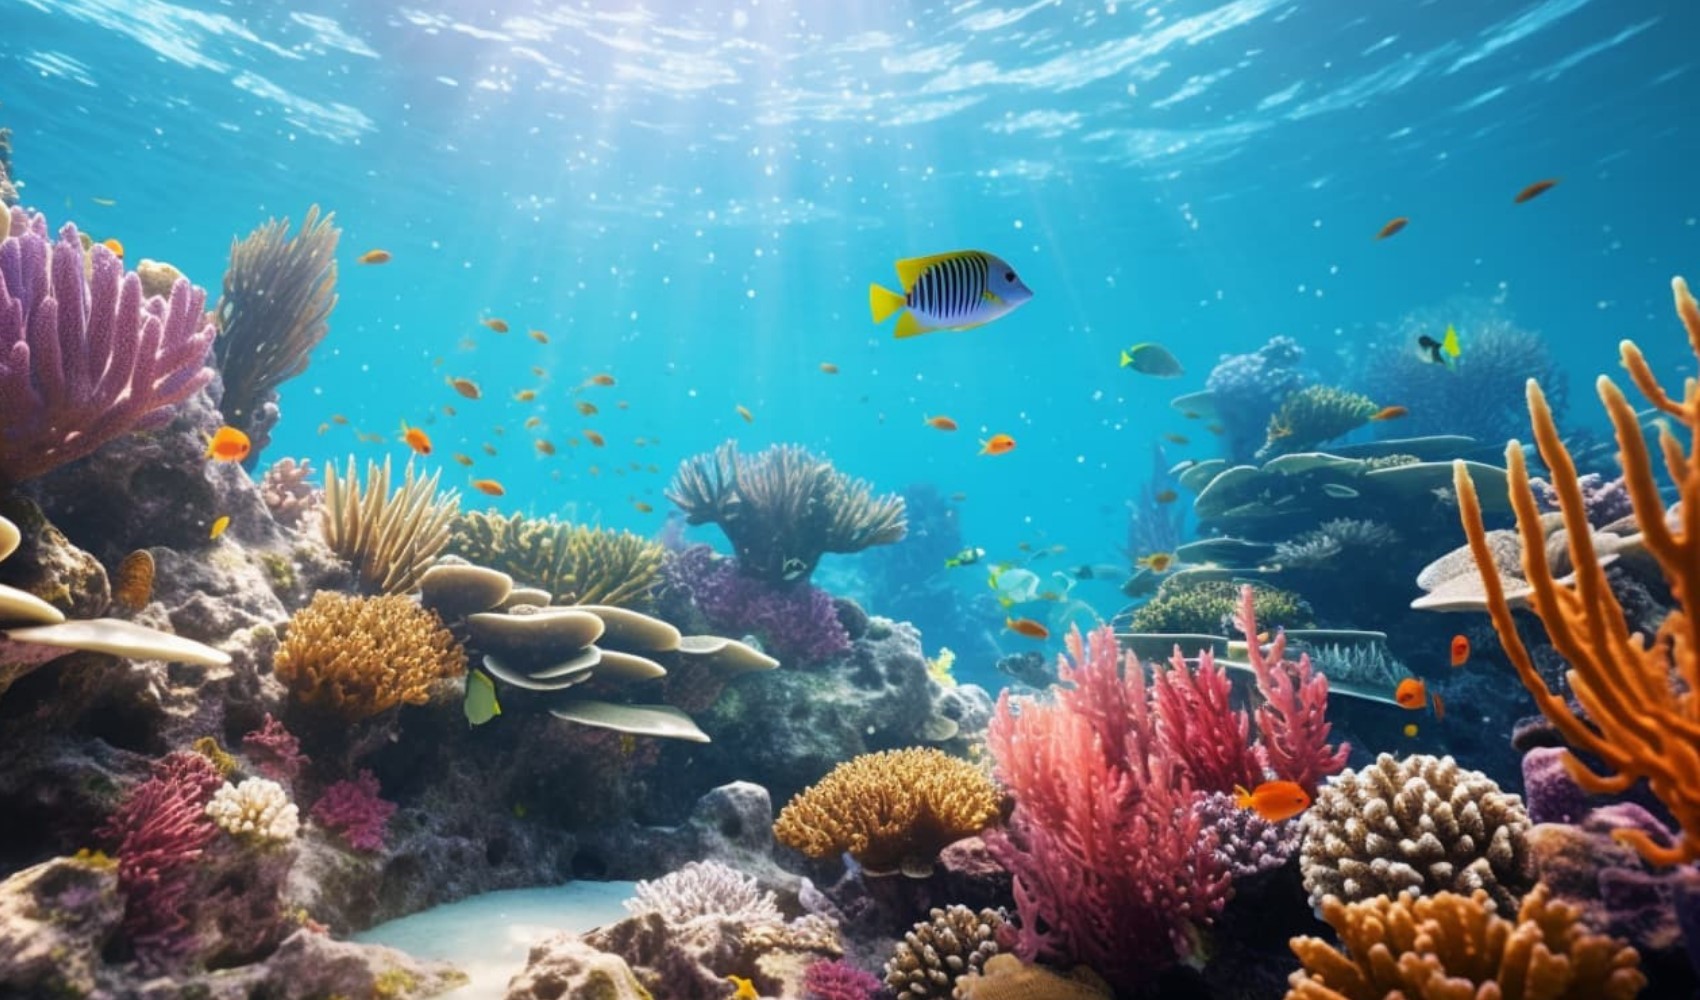 Bilim insanları duyurdu: Resifler, ses dalgalarıyla yeniden canlandırılmaya çalışılıyor